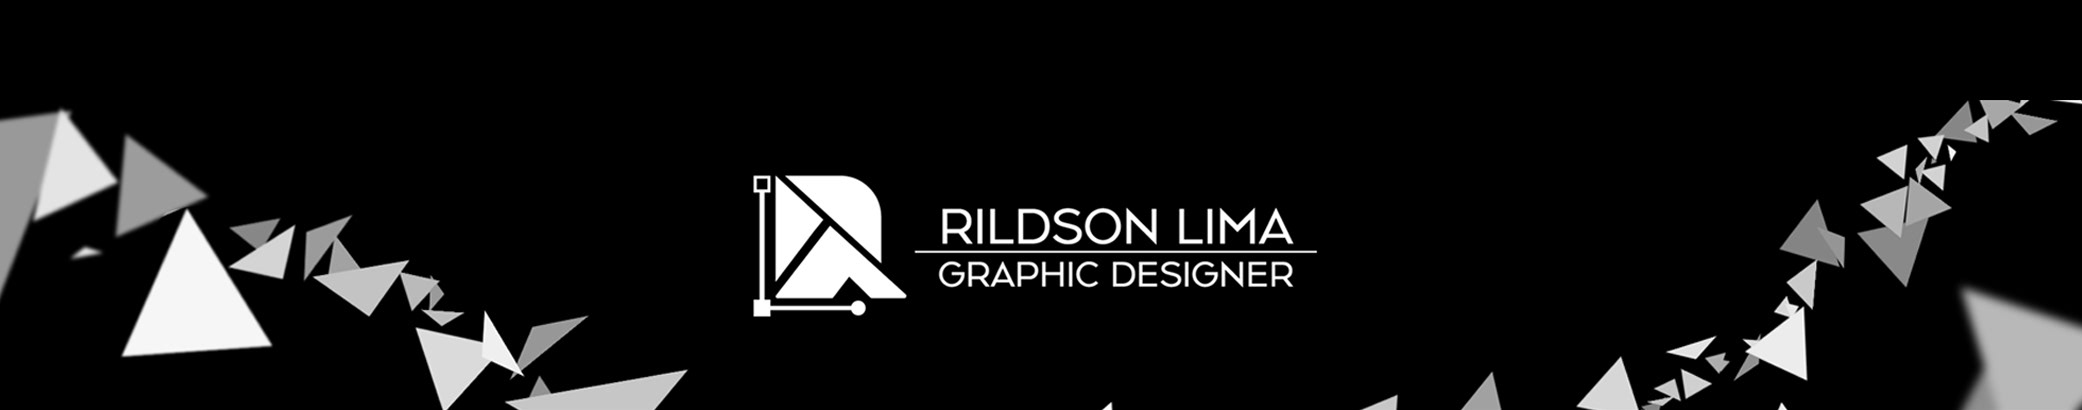 Rildson Lima's profile banner